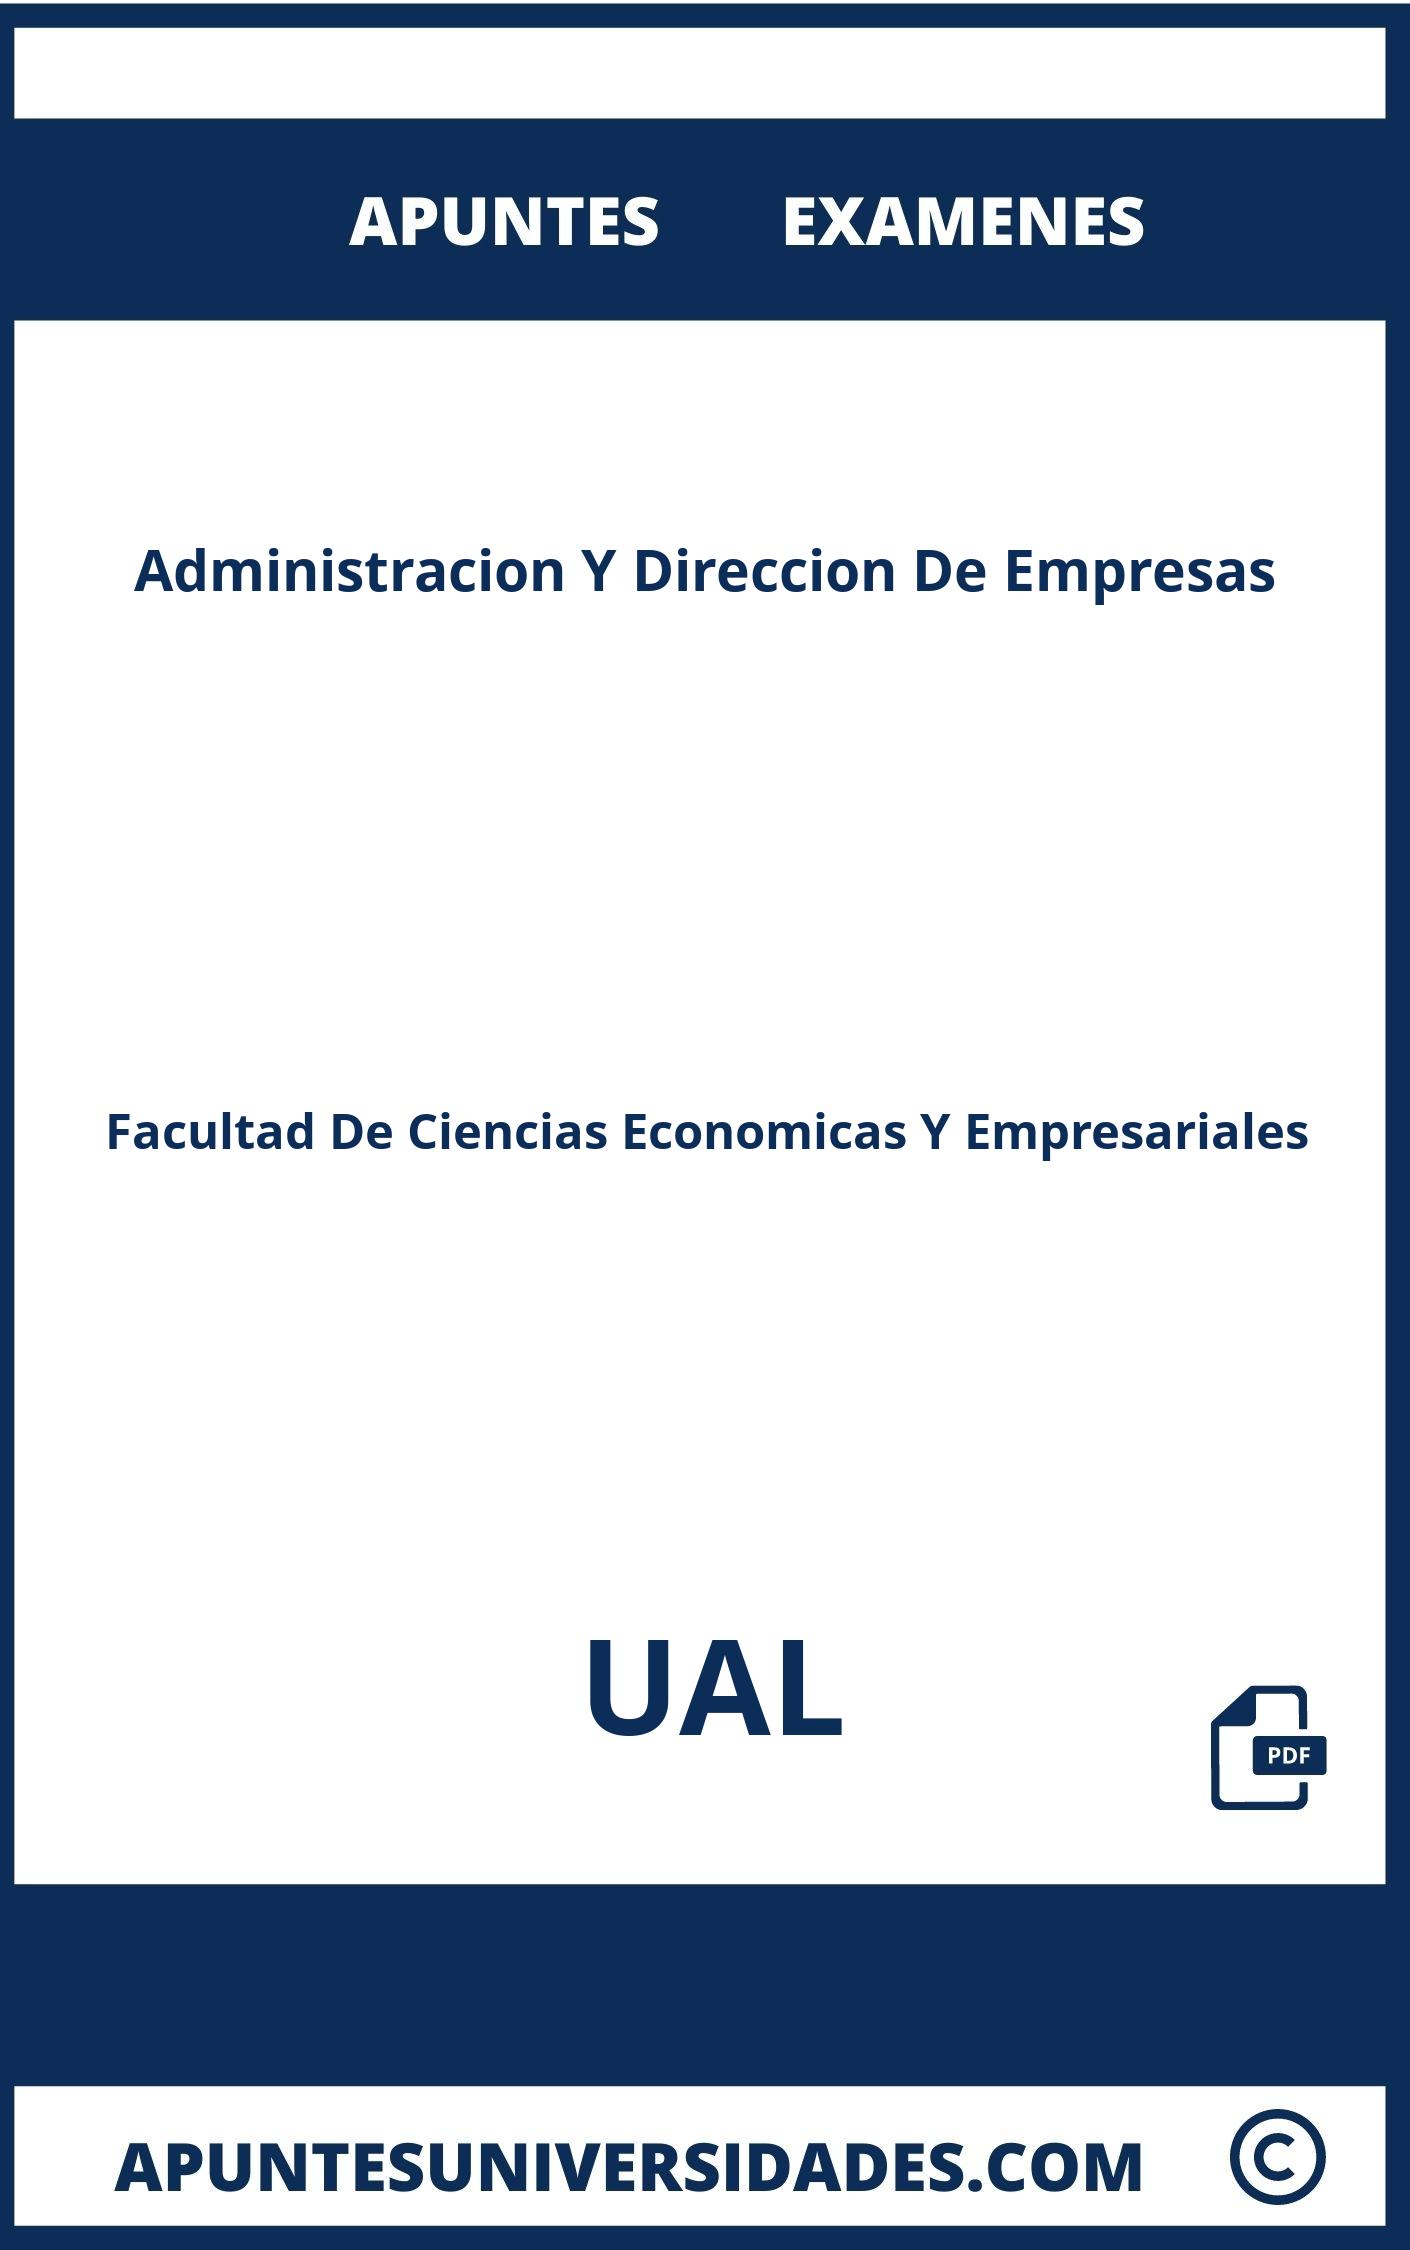 Examenes y Apuntes de Administracion Y Direccion De Empresas UAL